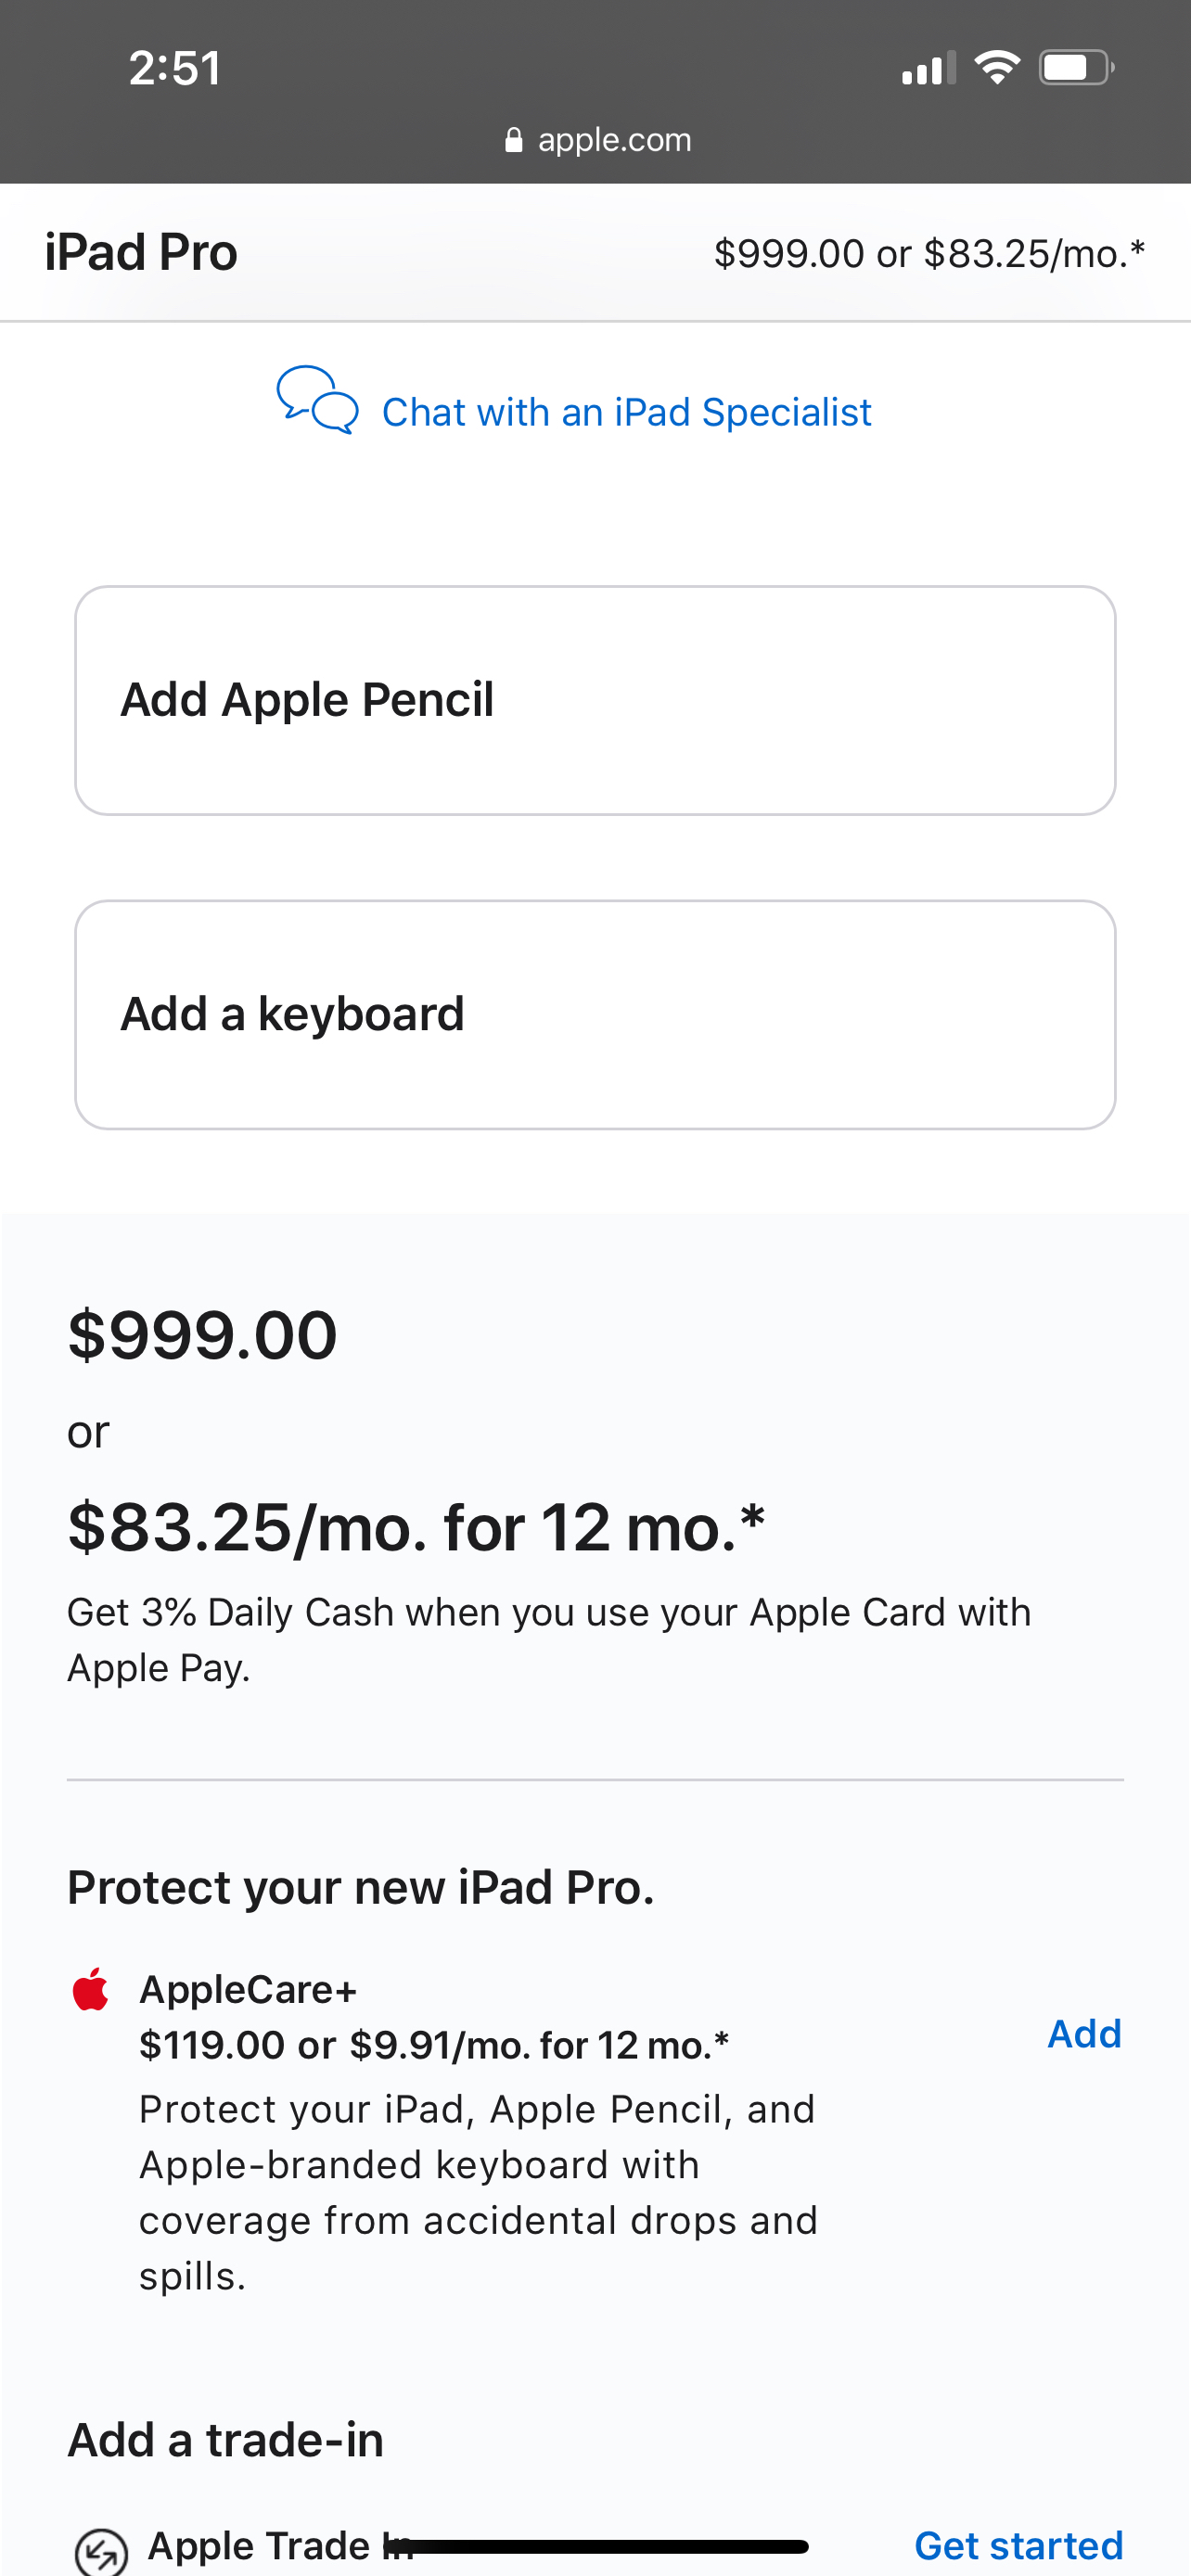 Thông báo cho anh em ai ở bên Mỹ muốn mua iPad,macbook thì hôm nay Apple sẽ giảm giá $100 khi mua v